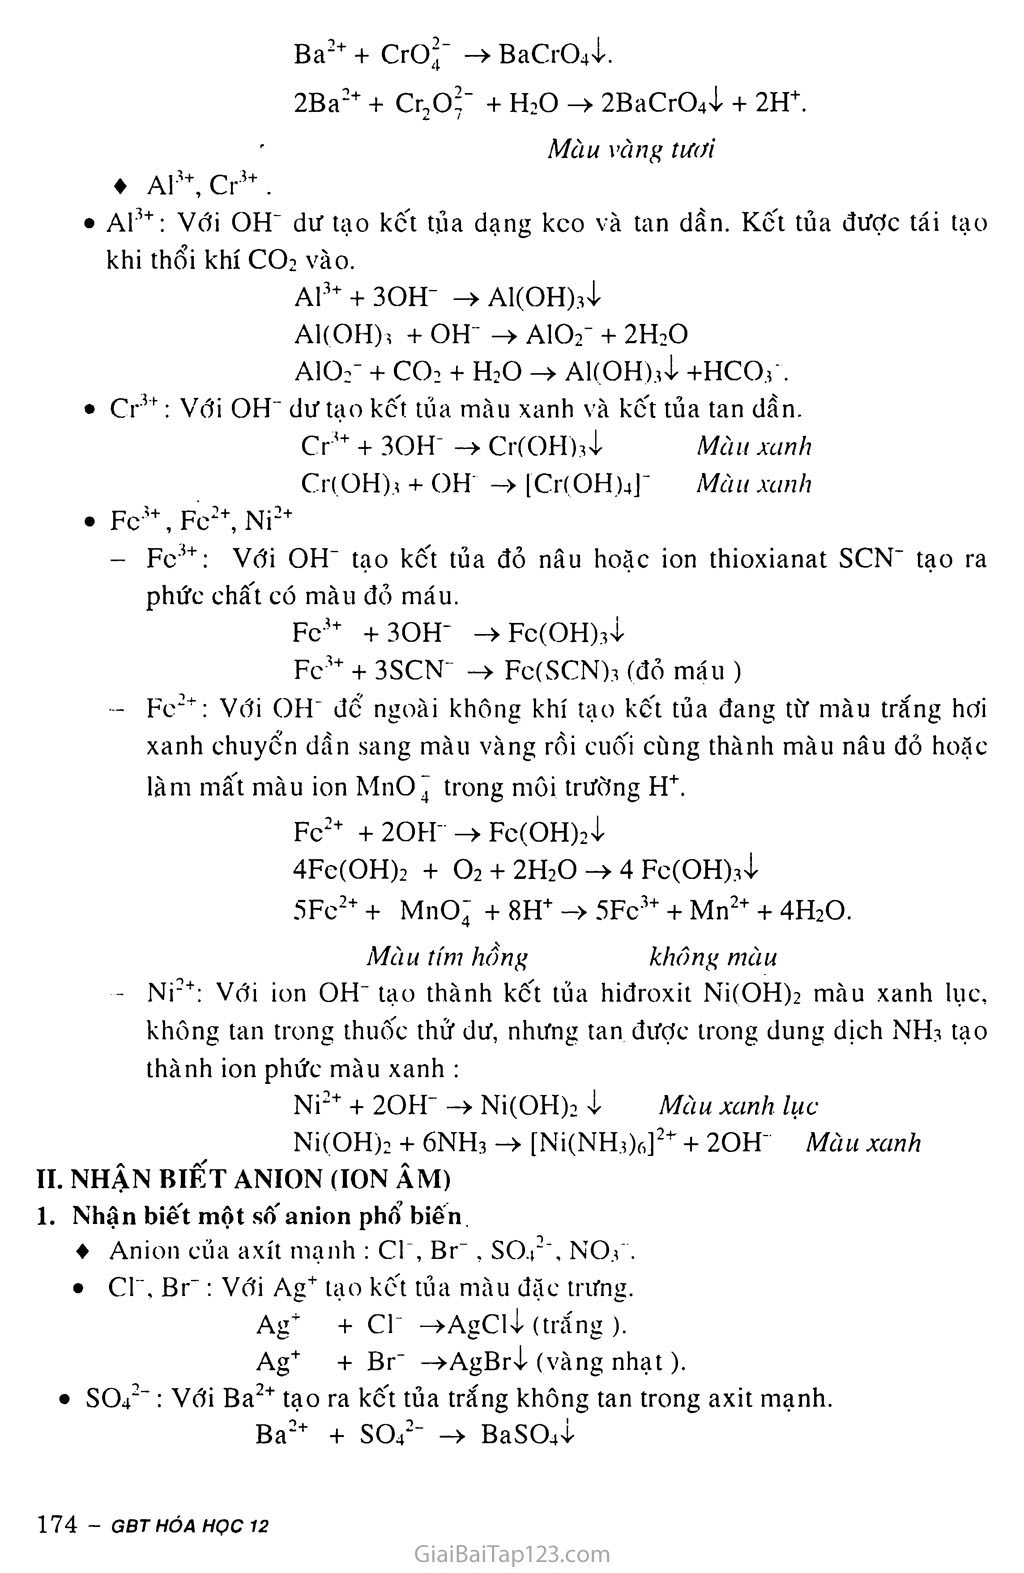 Bài 40: Nhận biết một số ion trong dunng dịch trang 2